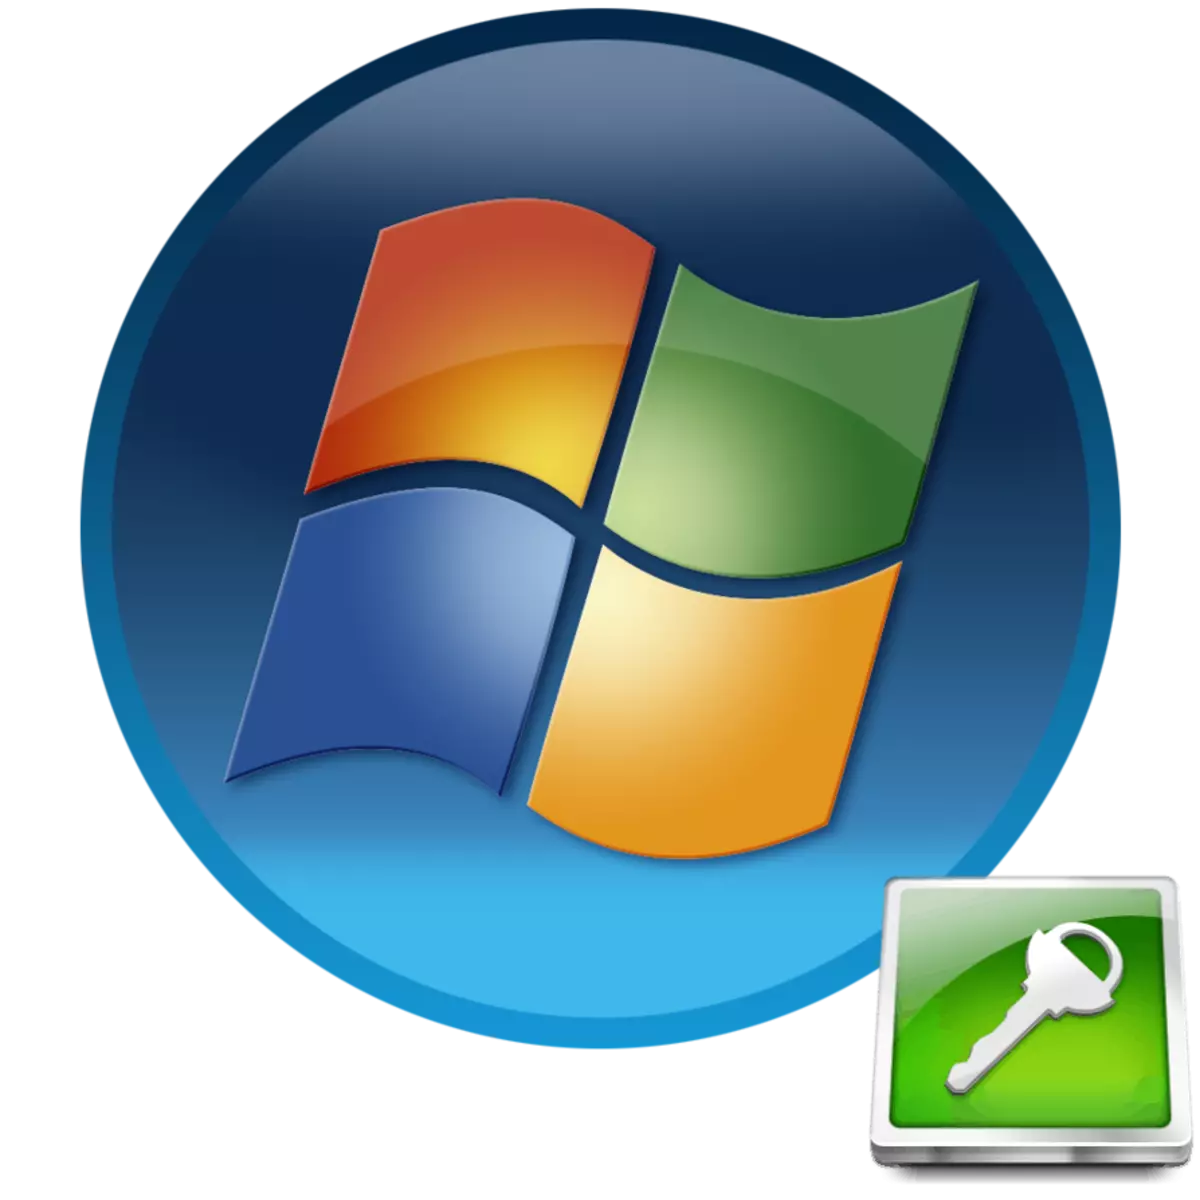 Heslo na počítači s Windows 7